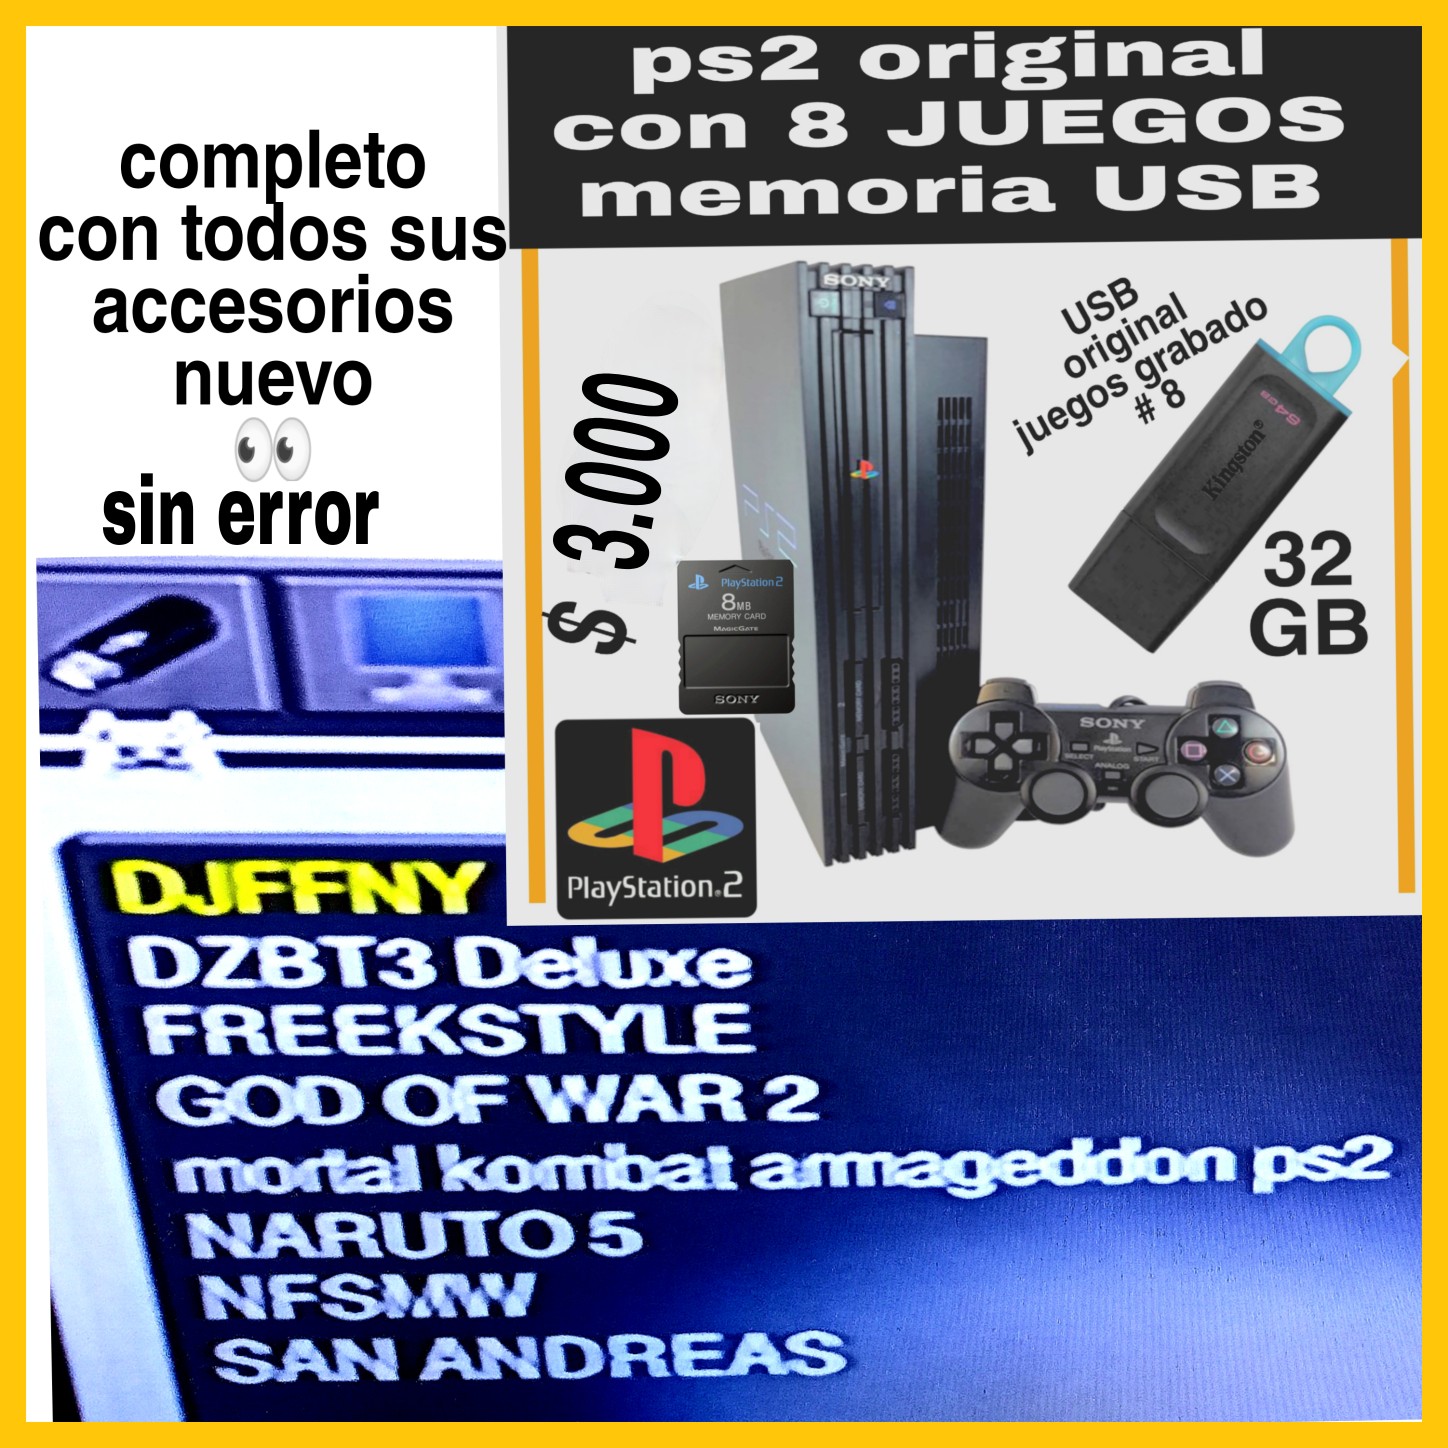 consolas y videojuegos - PS2 FAT CON 8 JUEGOS  GRABADO EN LA MEMORIA USB ORIGINAL